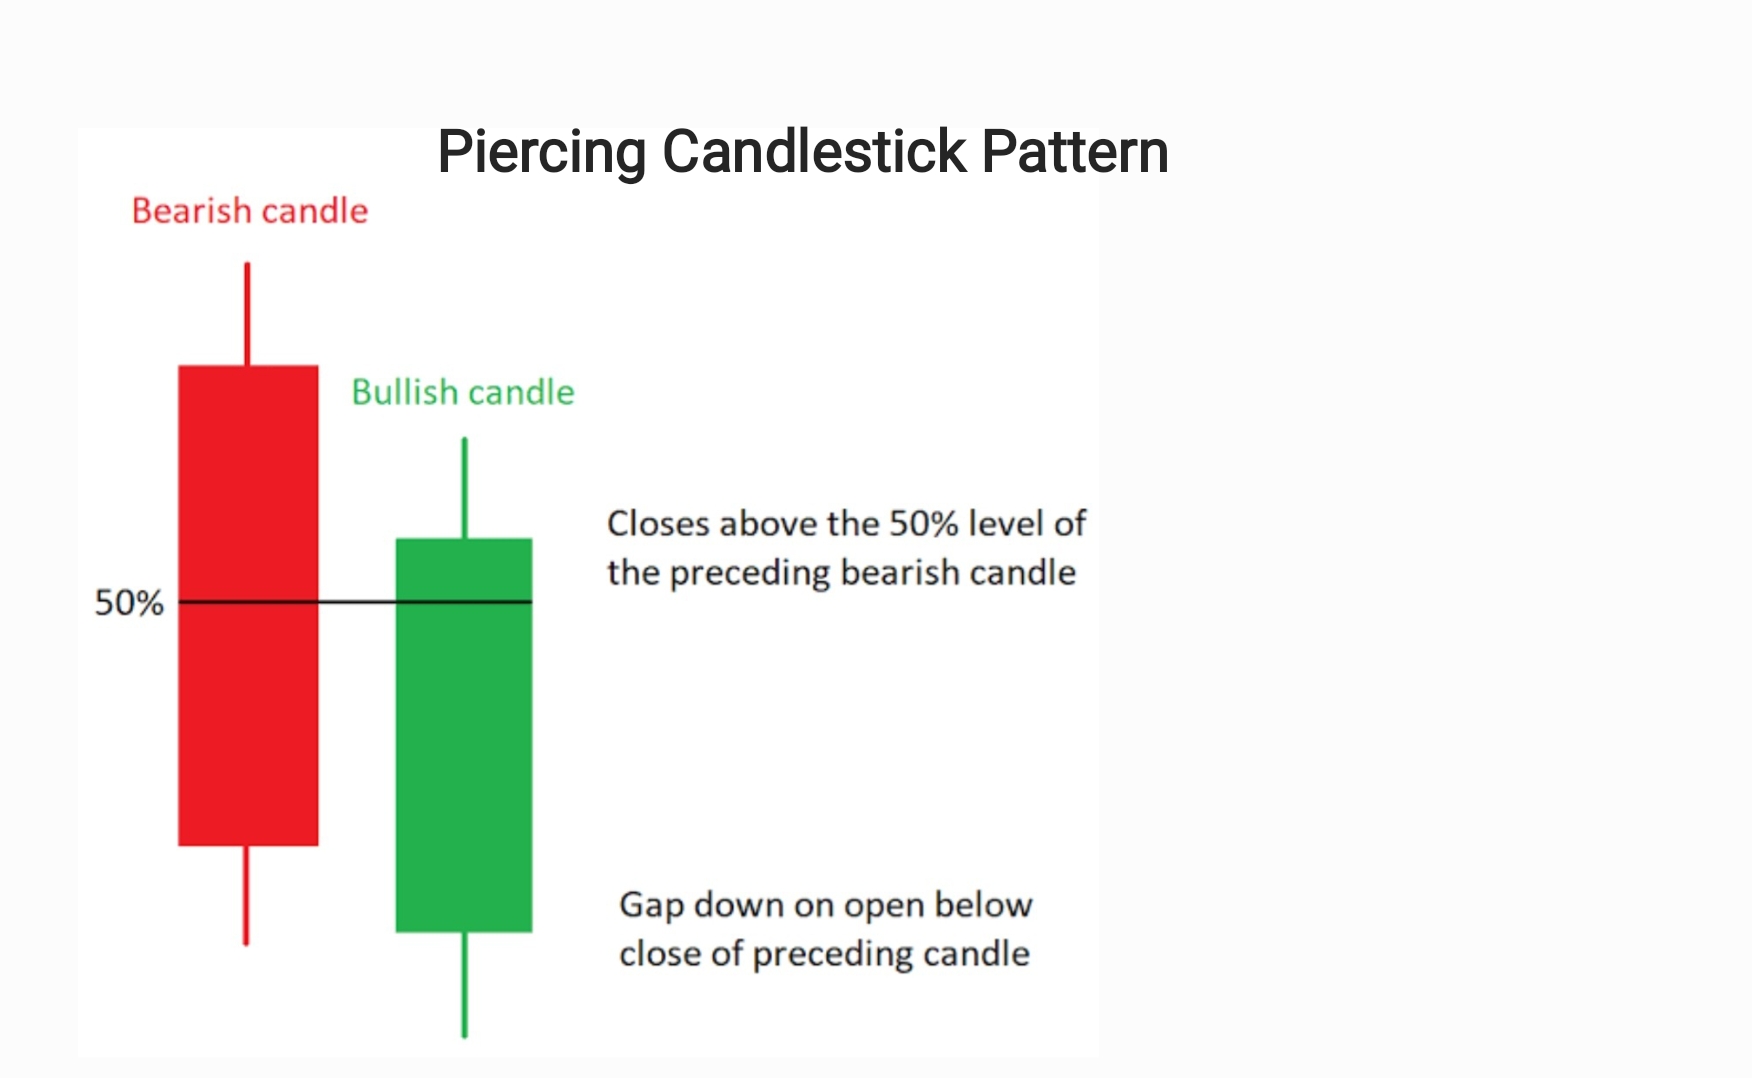 Piercing candlestick